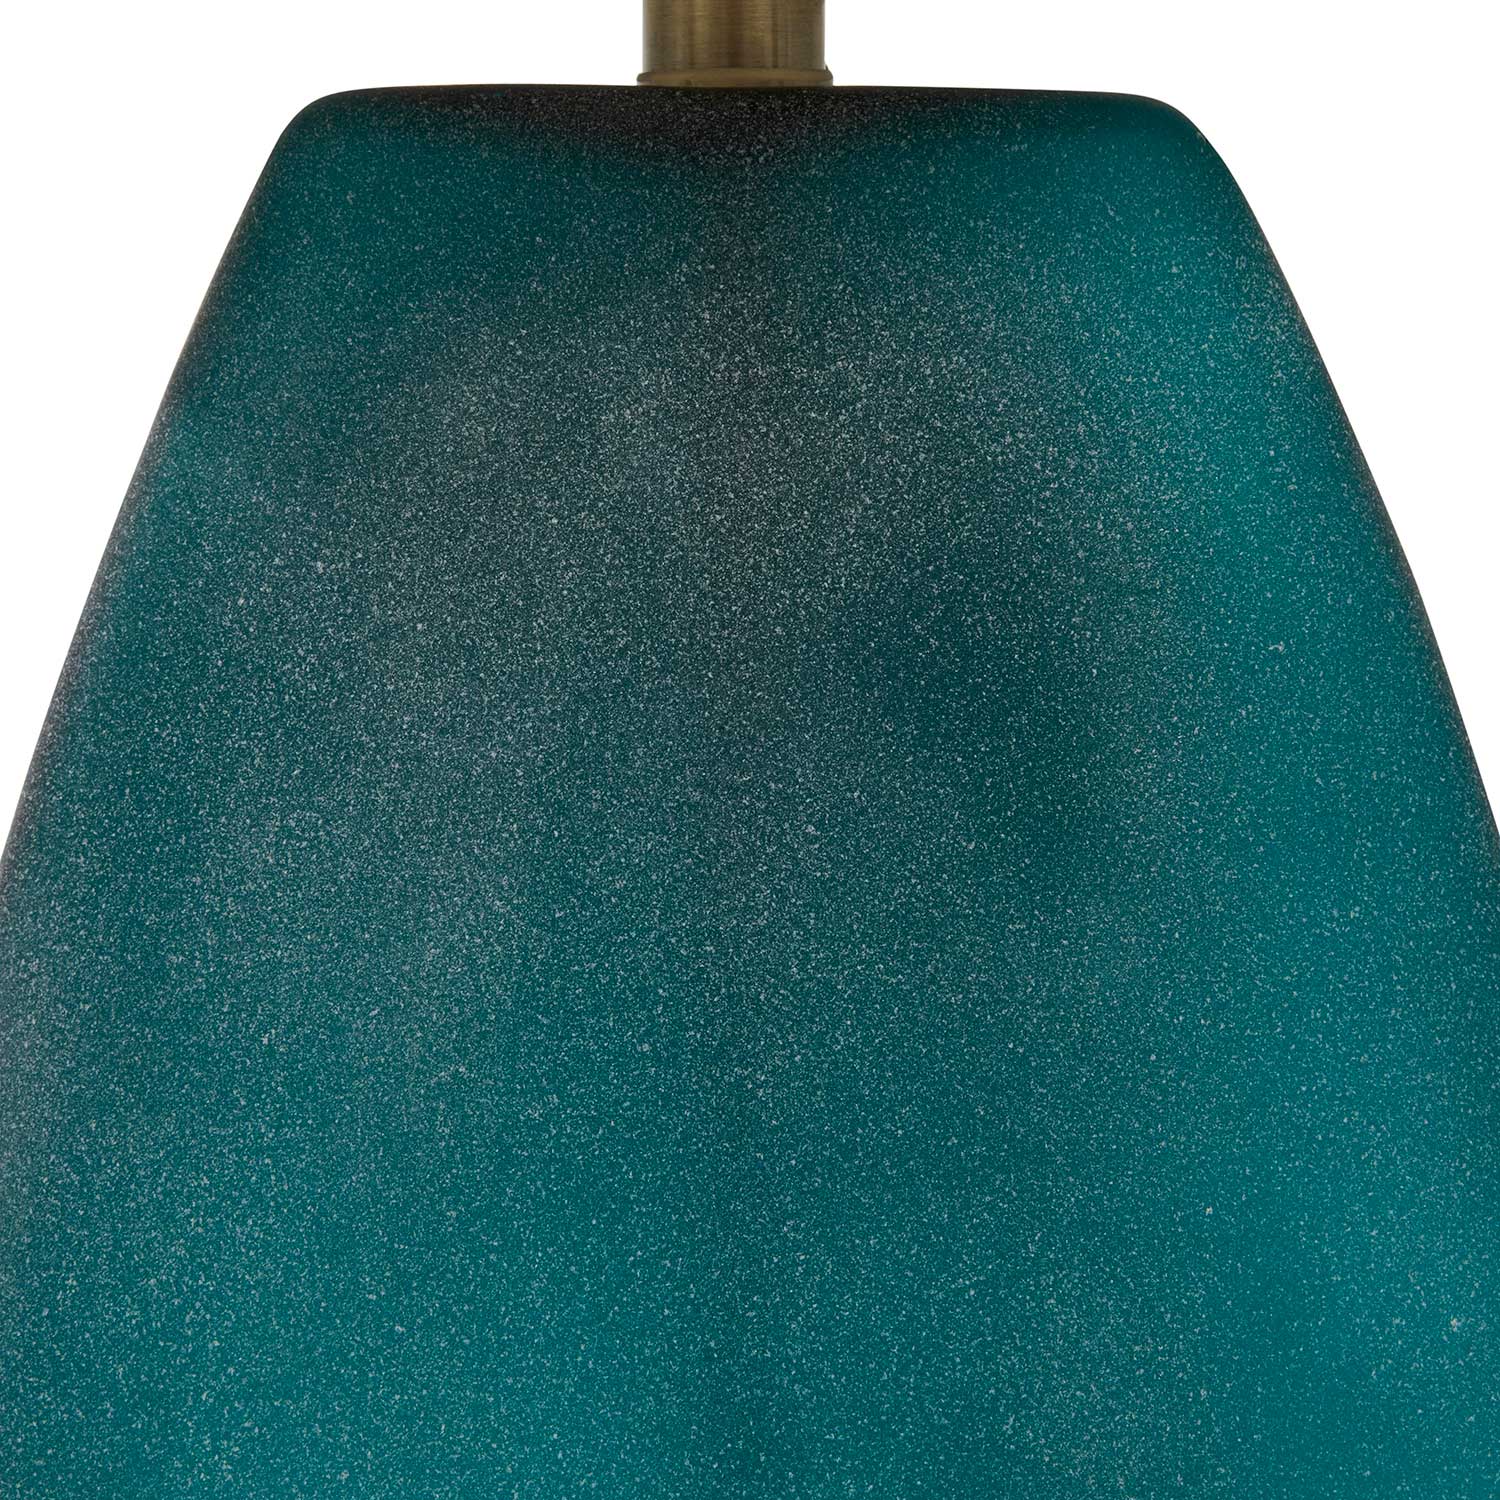 harris table lamp – white thumbnail image